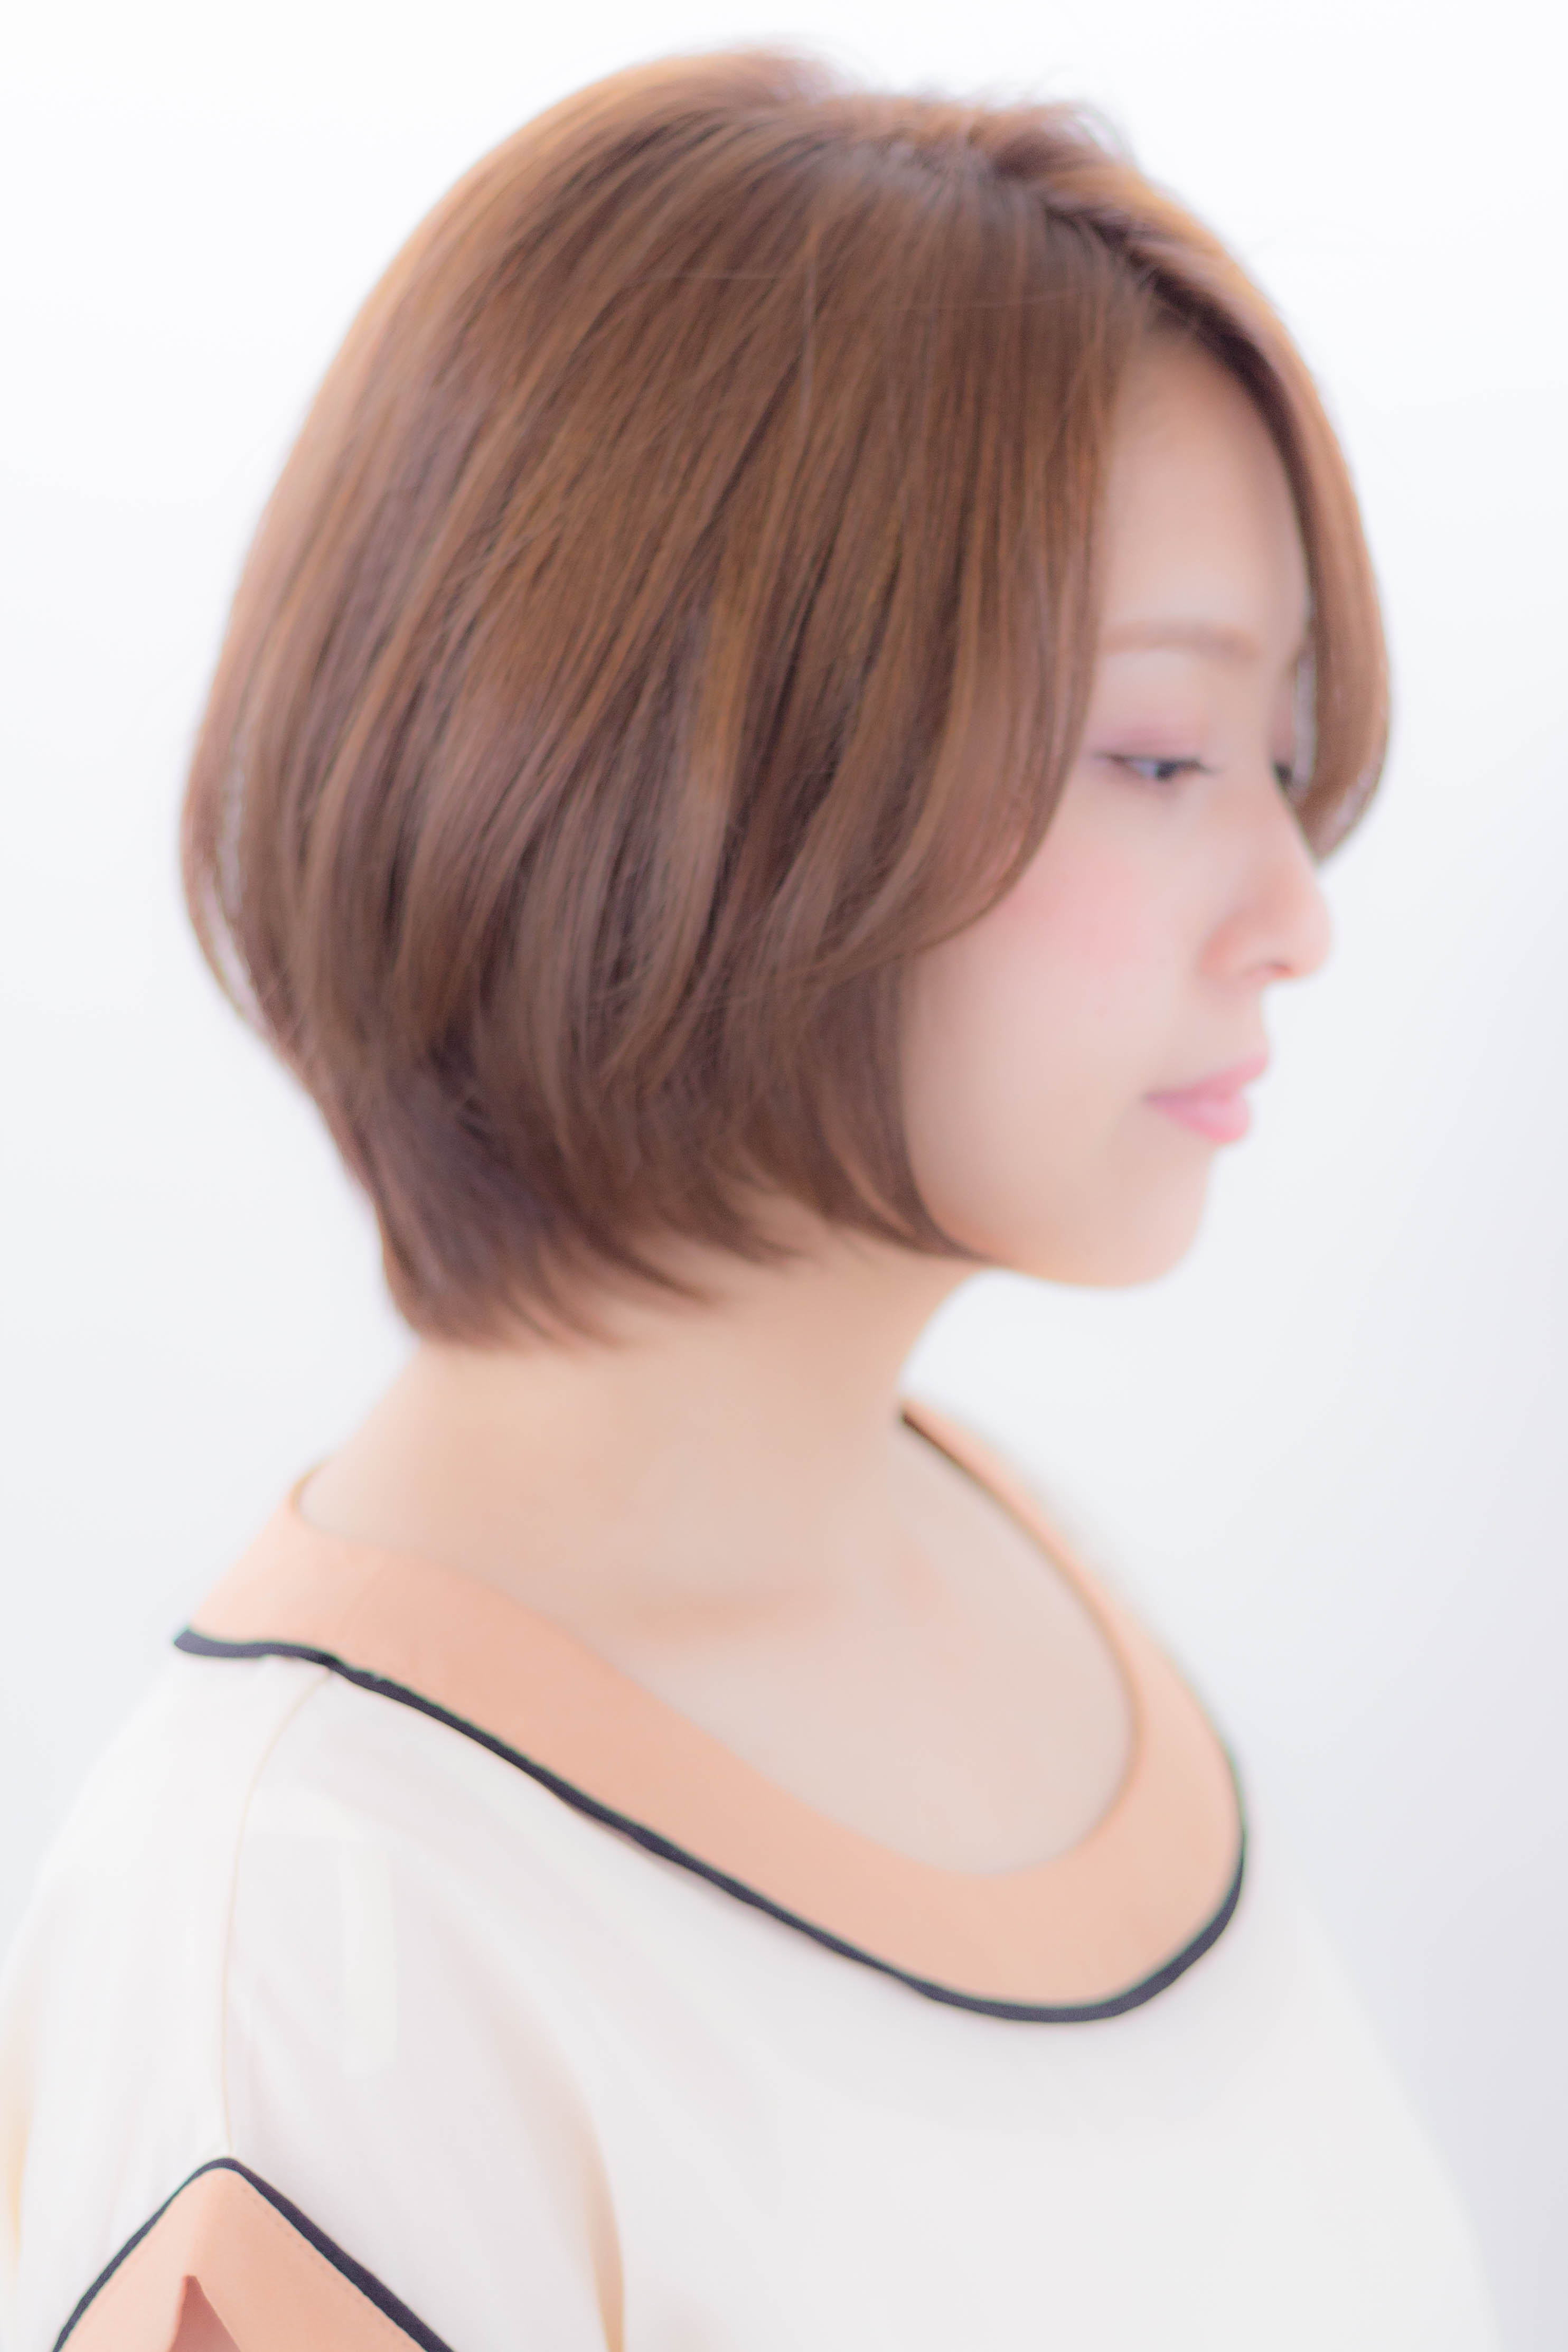 逆三角形さんに似合う髪型 顔型を綺麗に見せるポイントを解説 似合わせカットが上手い東京の美容師 美容室minx銀座 蛭田のブログ